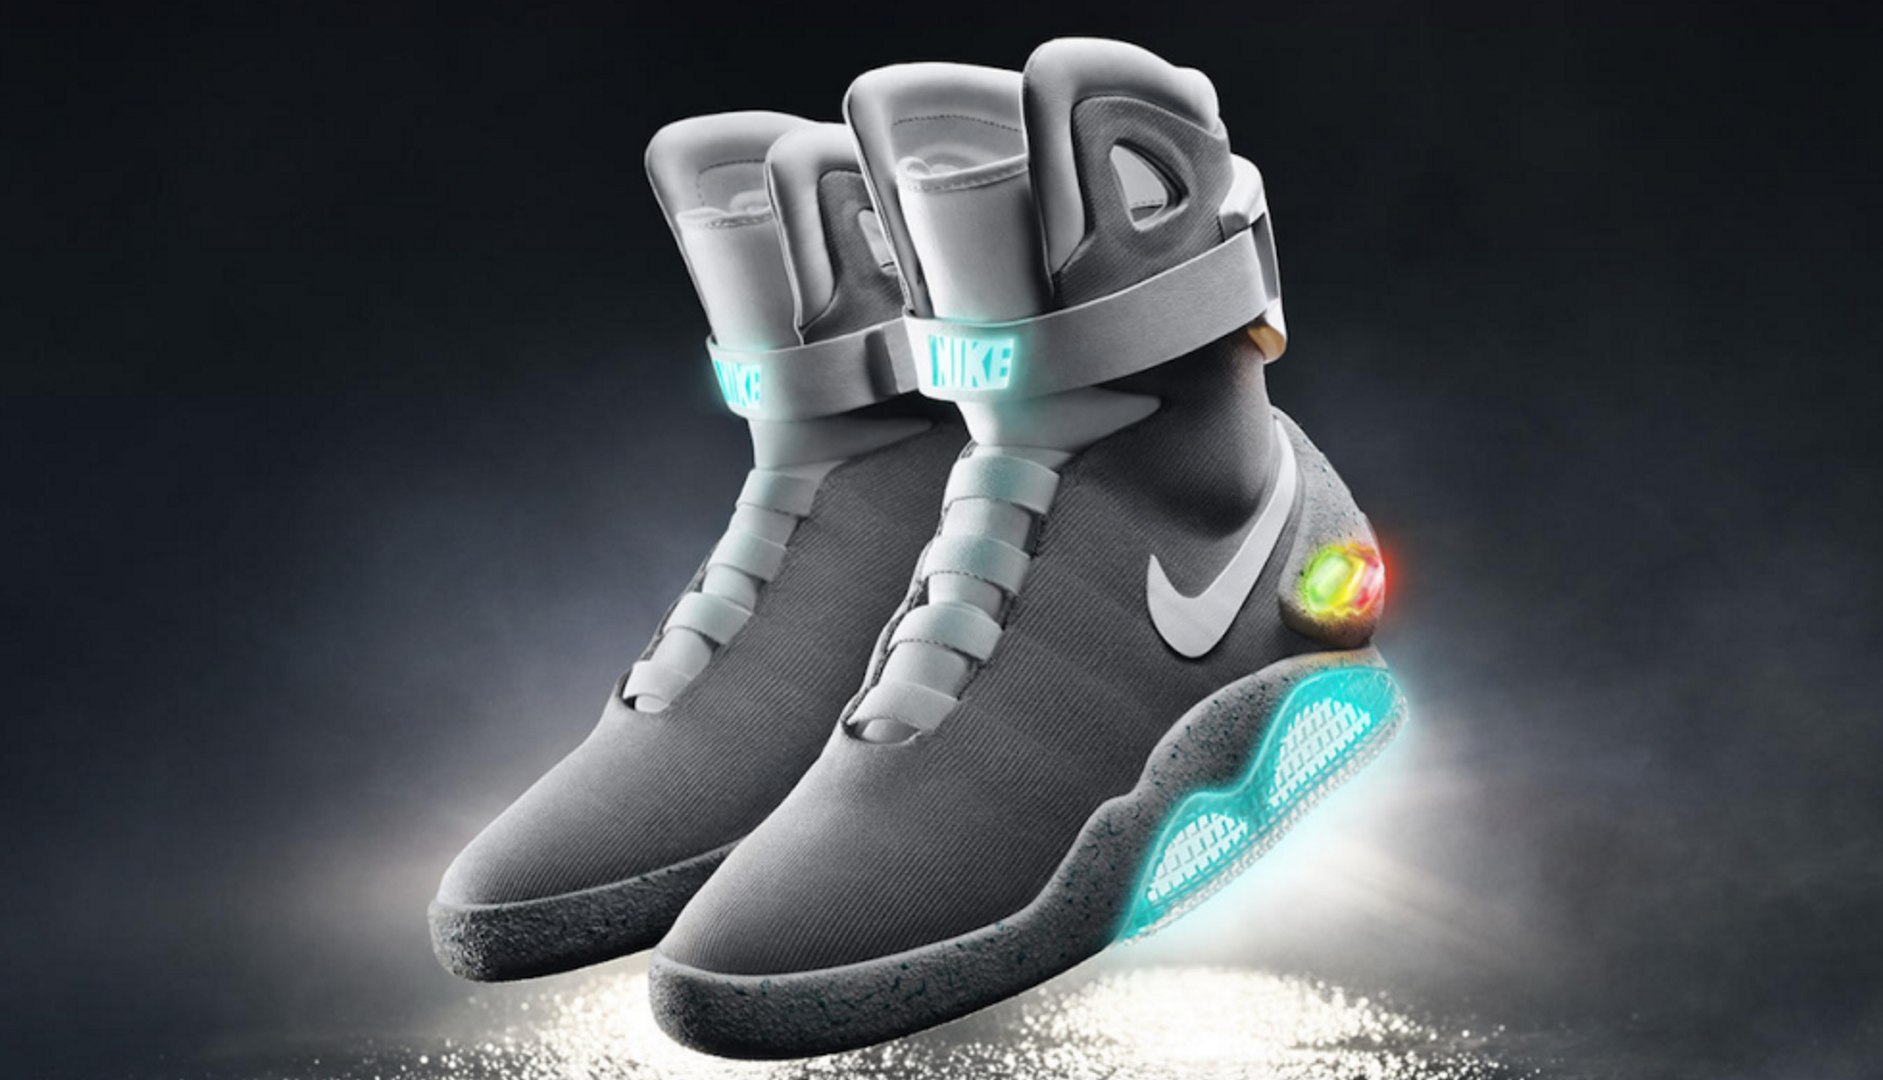 Llegan las nuevas Nike 1.0, las zapatillas con robocordones - Vídeo Dailymotion